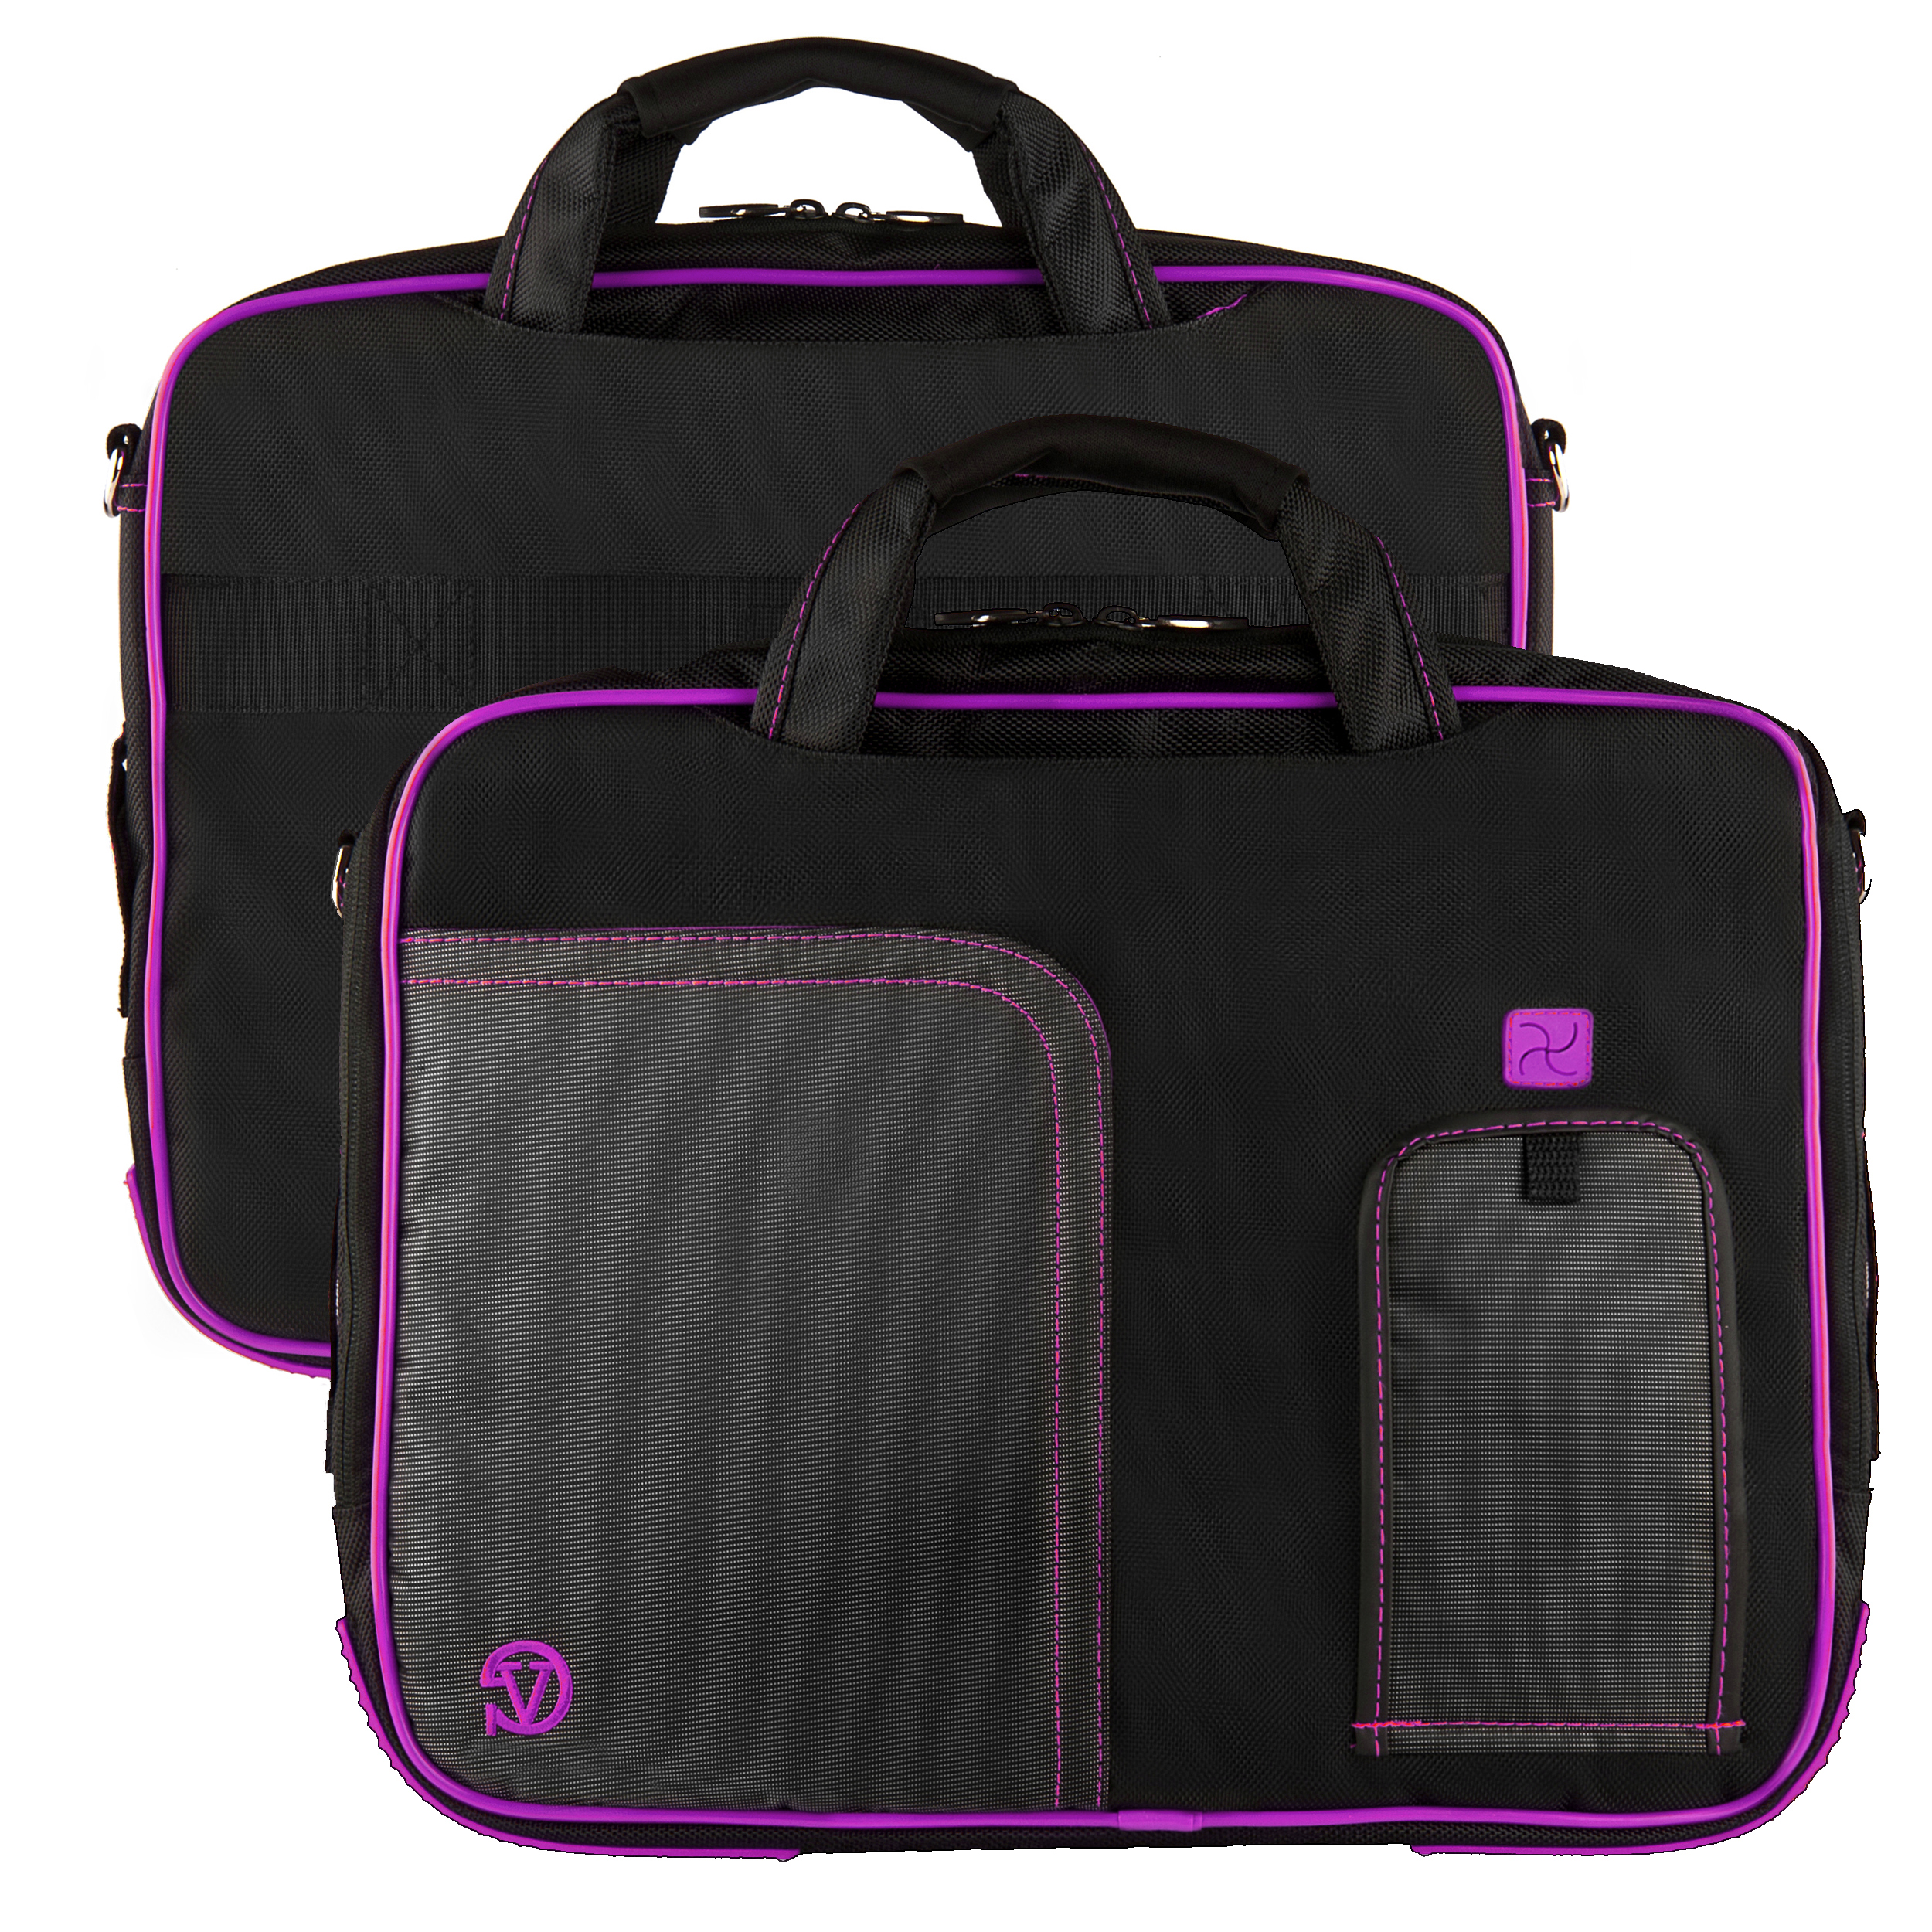 VANGODDY Pindar Laptop Carrying Case Bag with Adjustable Shoulder Strap fits Lenovo 13, 13.3 inch Laptops / Netbooks / Ultrabook